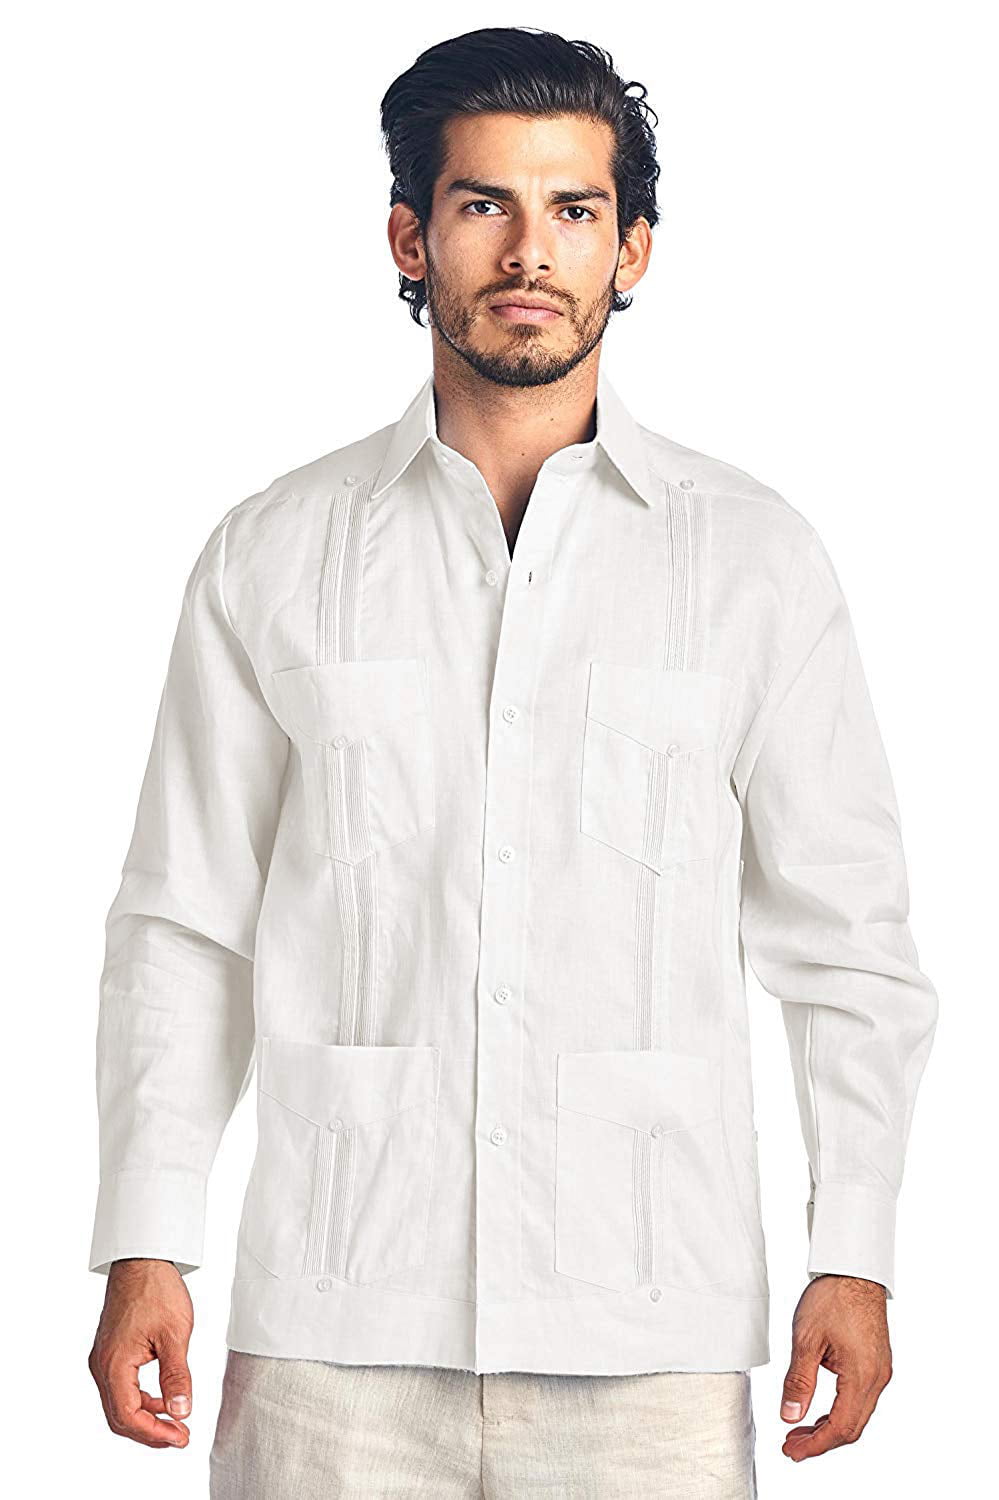 VKWEAR - Men's Premium Cuban Beach Long Sleeve Button Up Linen ...